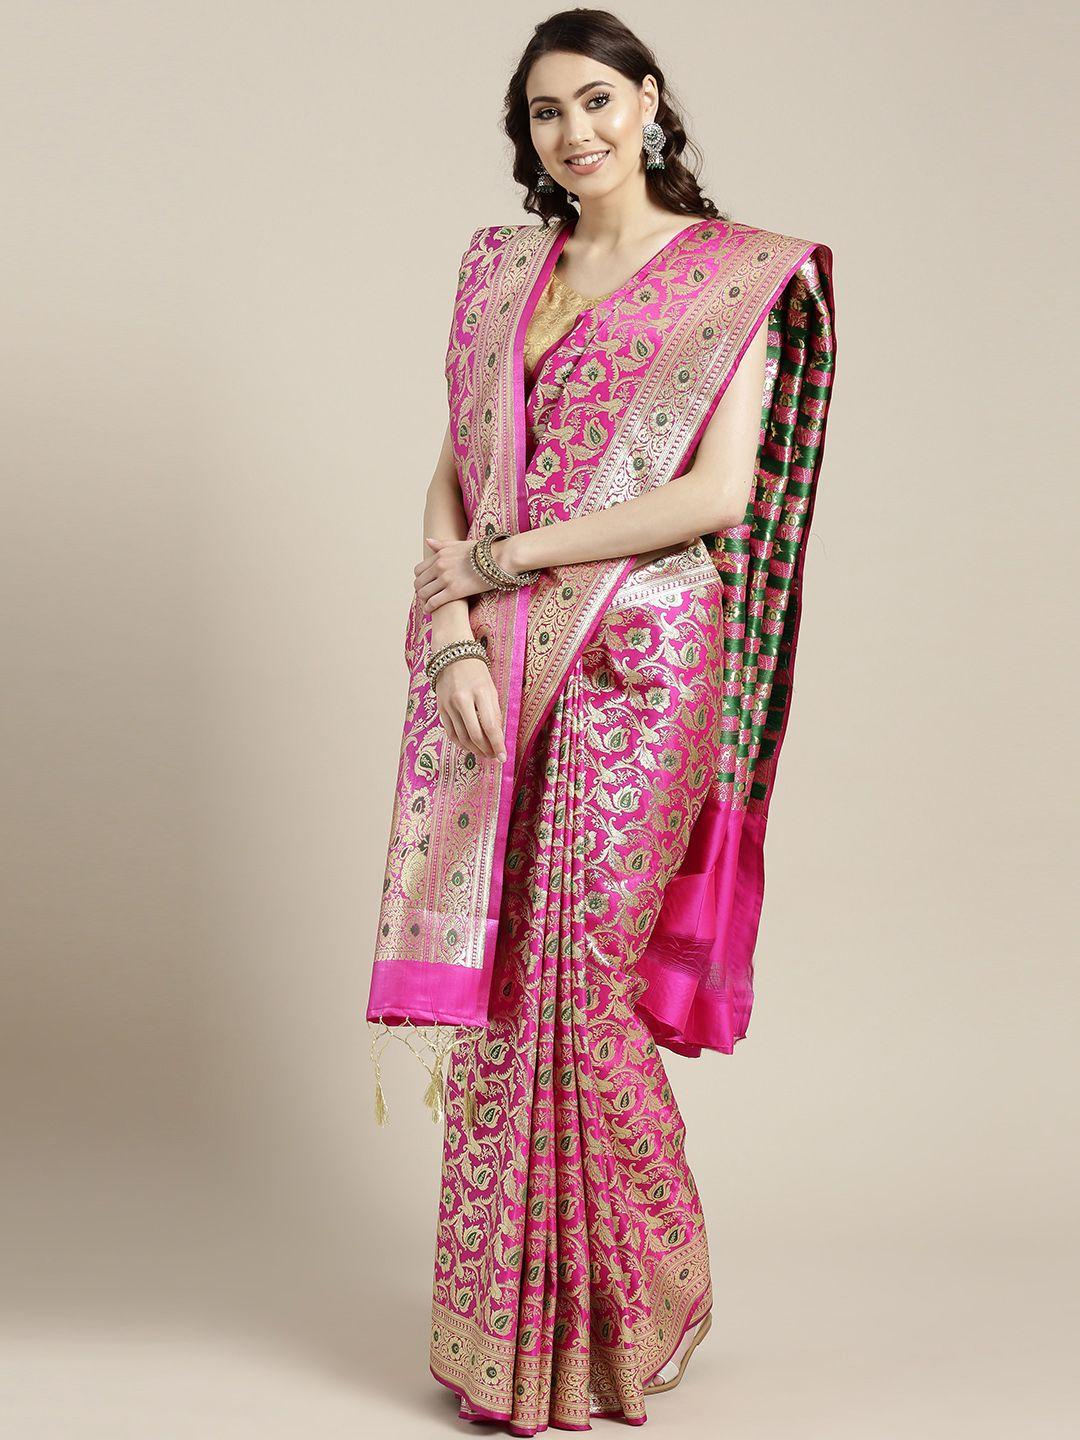 chhabra 555 magenta & golden woven design banarasi saree with dupatta